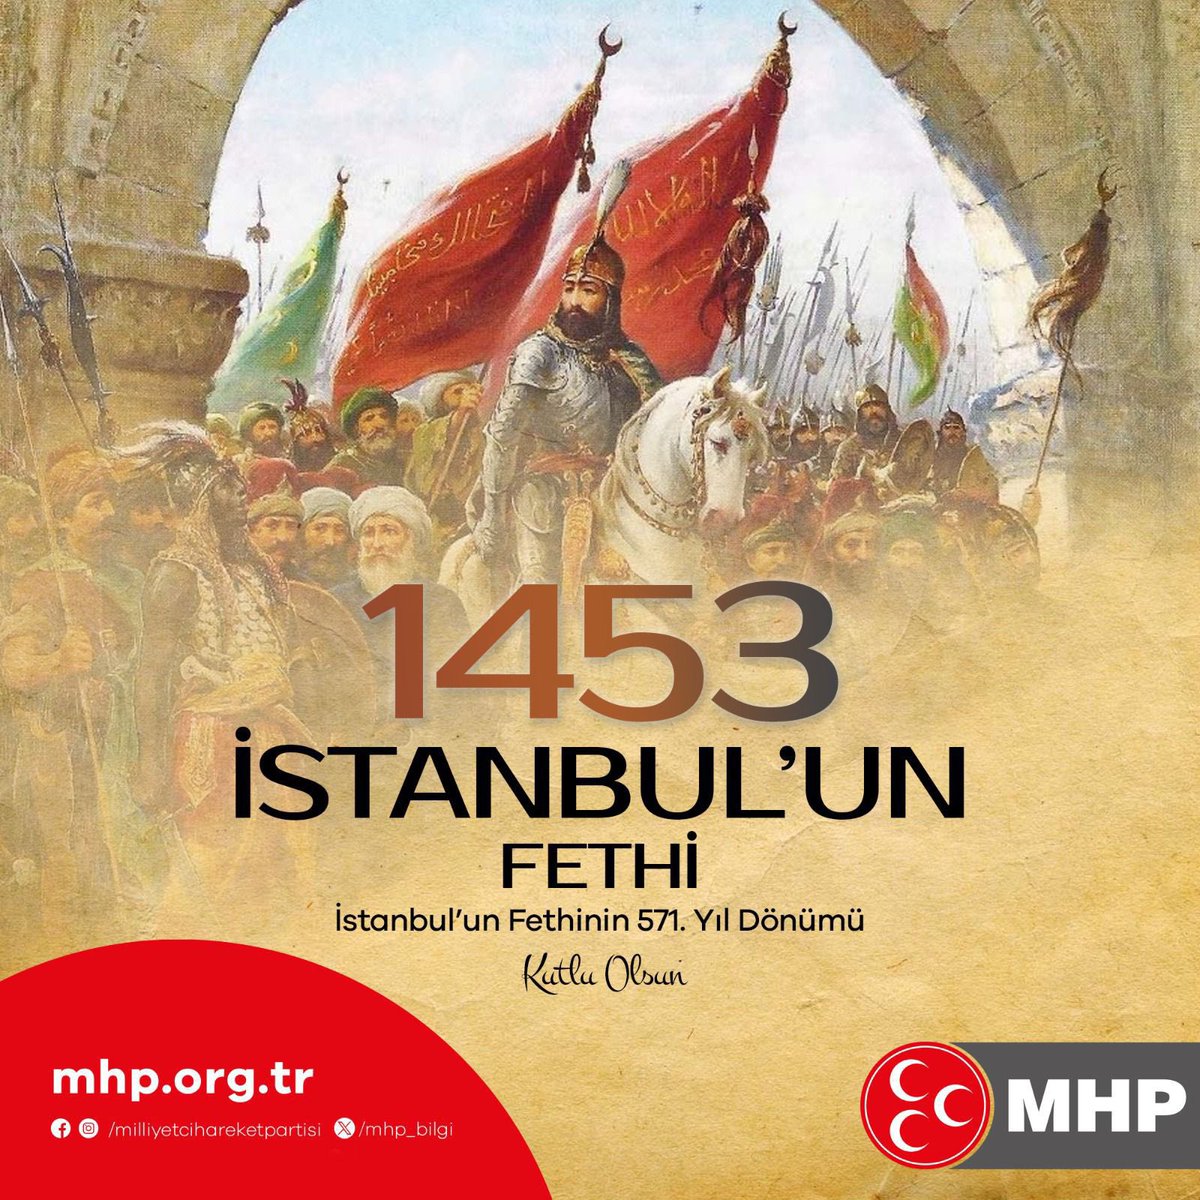 Tarihin beşiğini sallayan, 571 yıldır da Türk milletinin namus timsali olan İstanbul’umuzla övünüyor, bu kentimizde yaşayan vatandaşlarımızı hürmetle selamlıyorum.   İstanbul’u bir Türk toprağı haline getirerek, tarihe mührünü vurmuş olan büyük Hünkarımız Fatih Sultan Mehmet